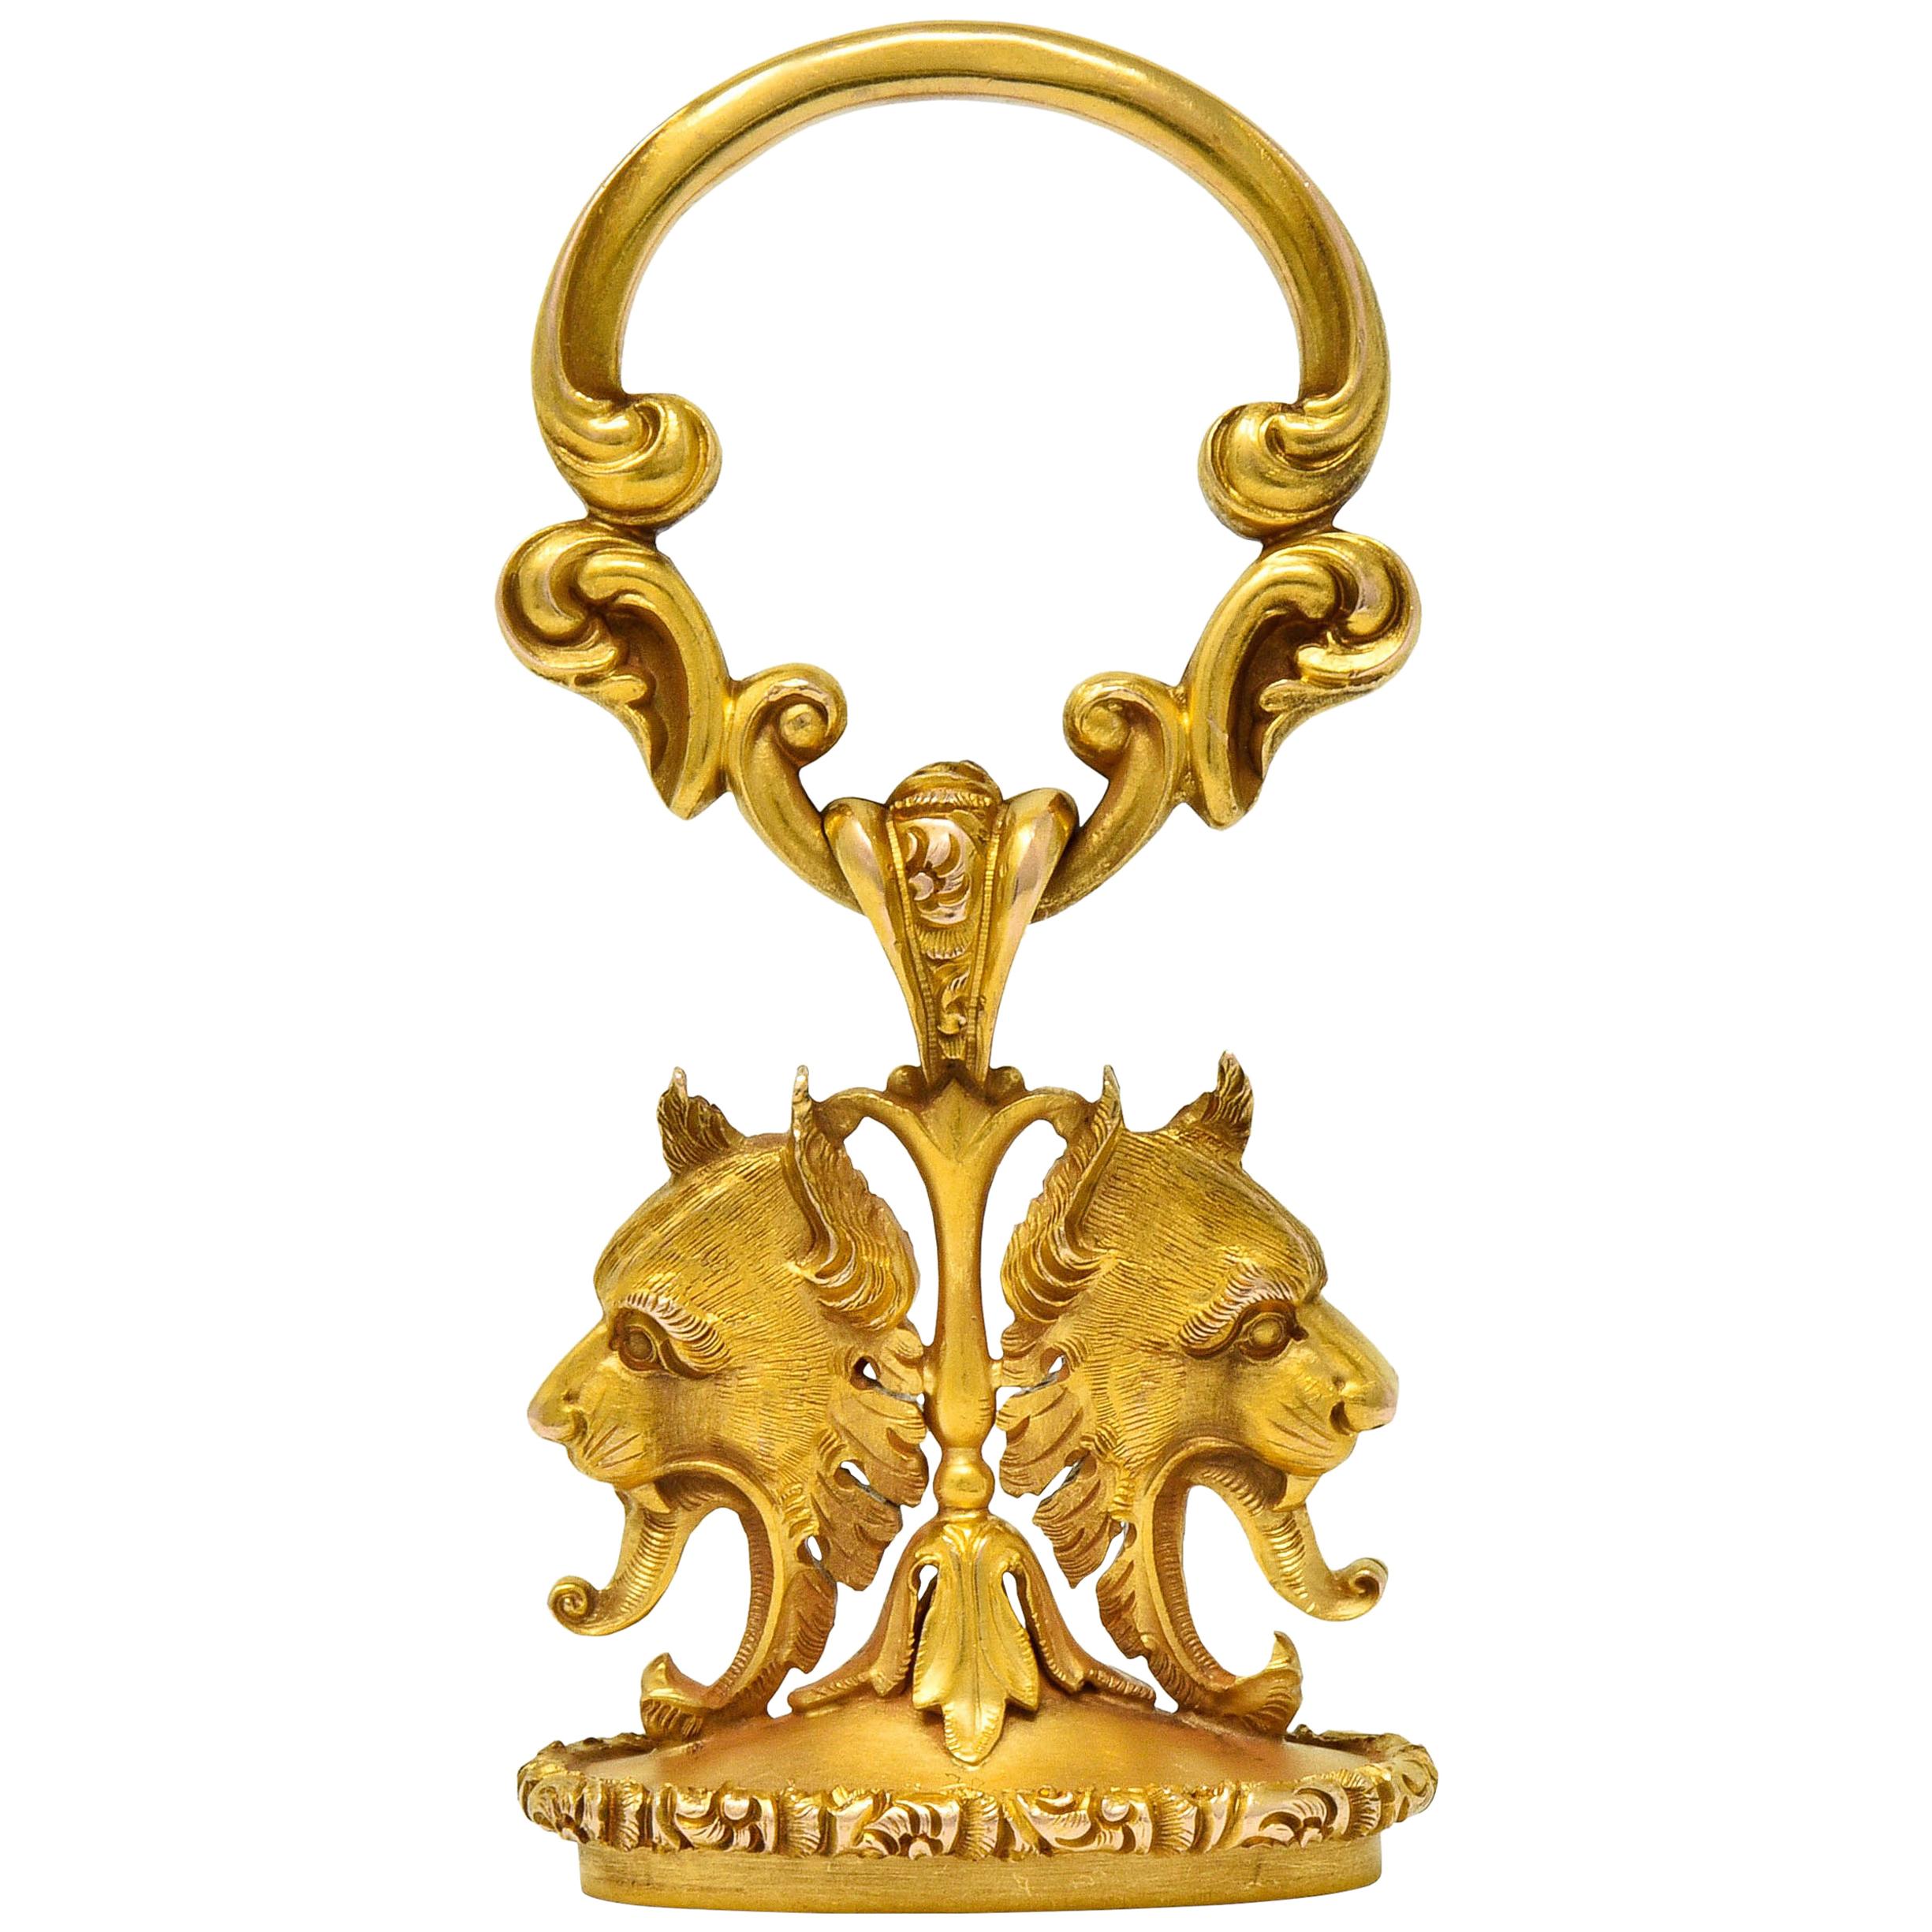 Large Carter & Gough Art Nouveau 14 Karat Gold Lion Fob Charm Pendant